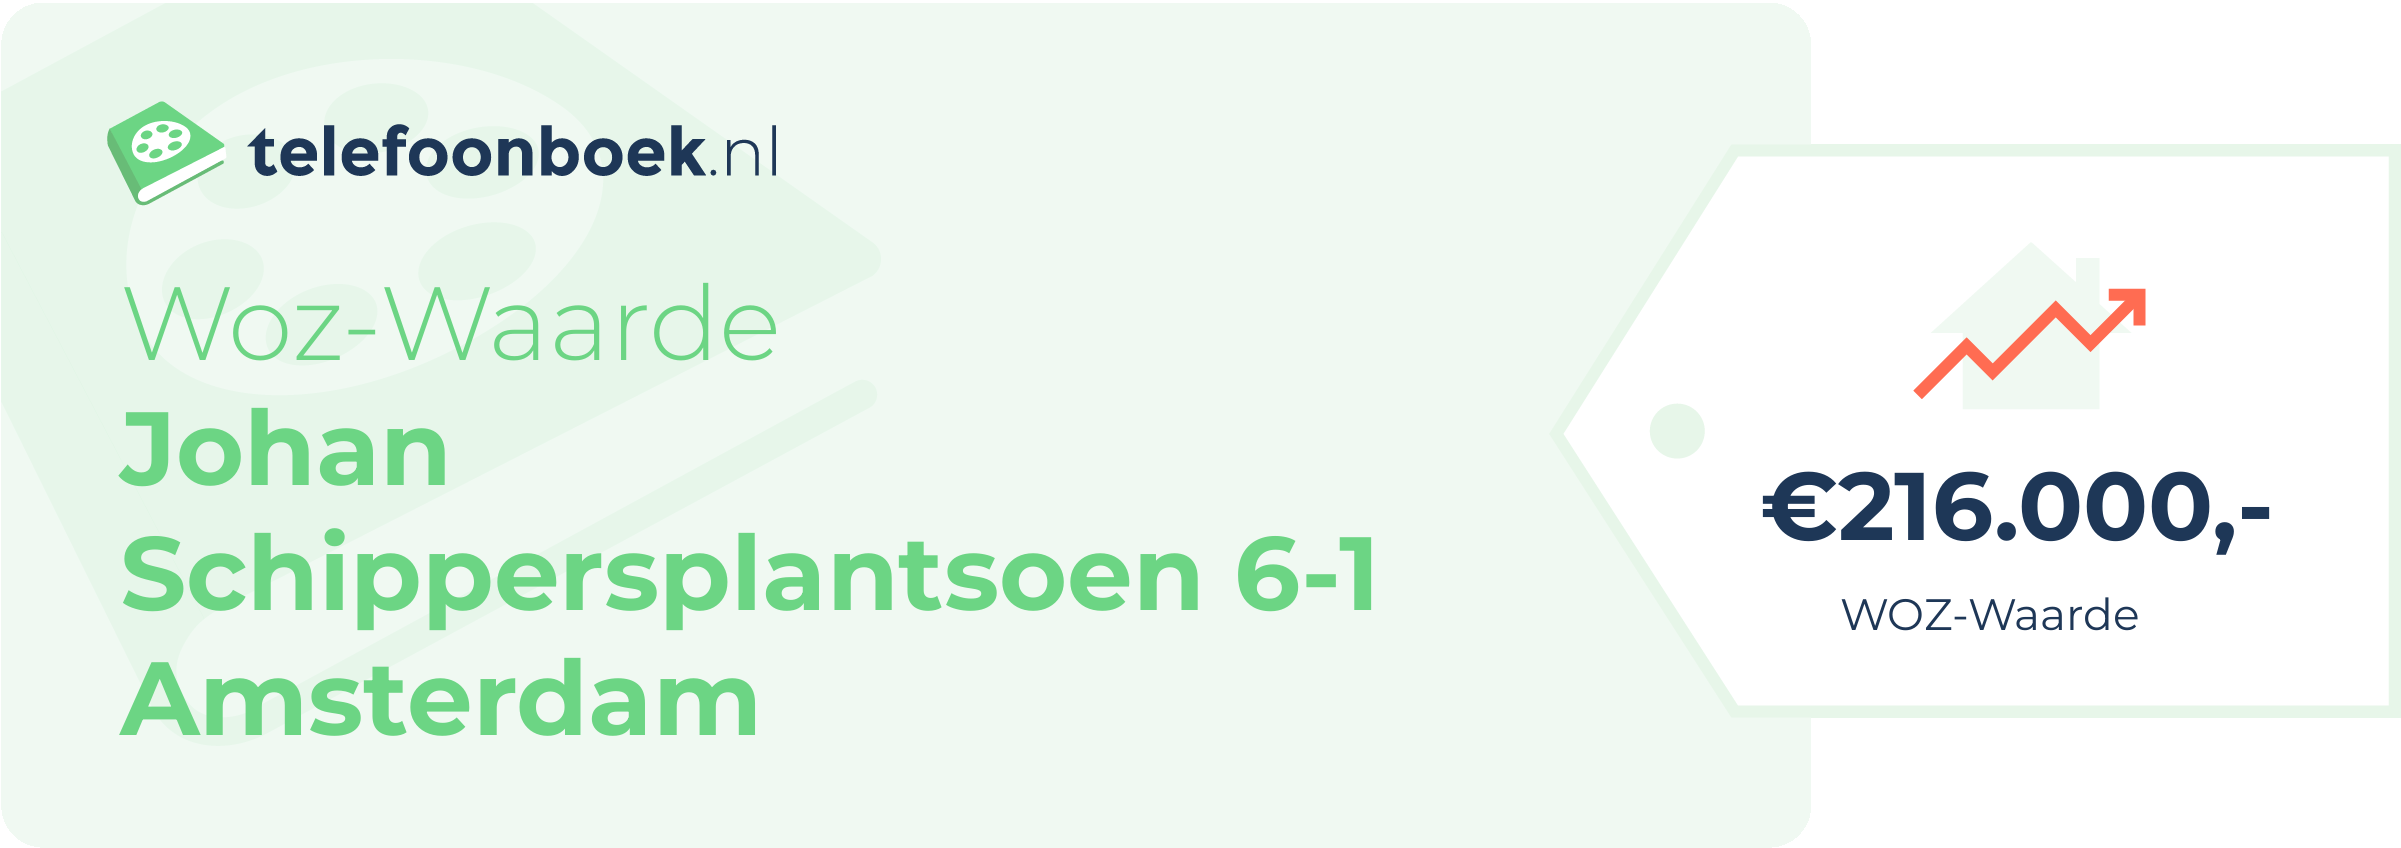 WOZ-waarde Johan Schippersplantsoen 6-1 Amsterdam